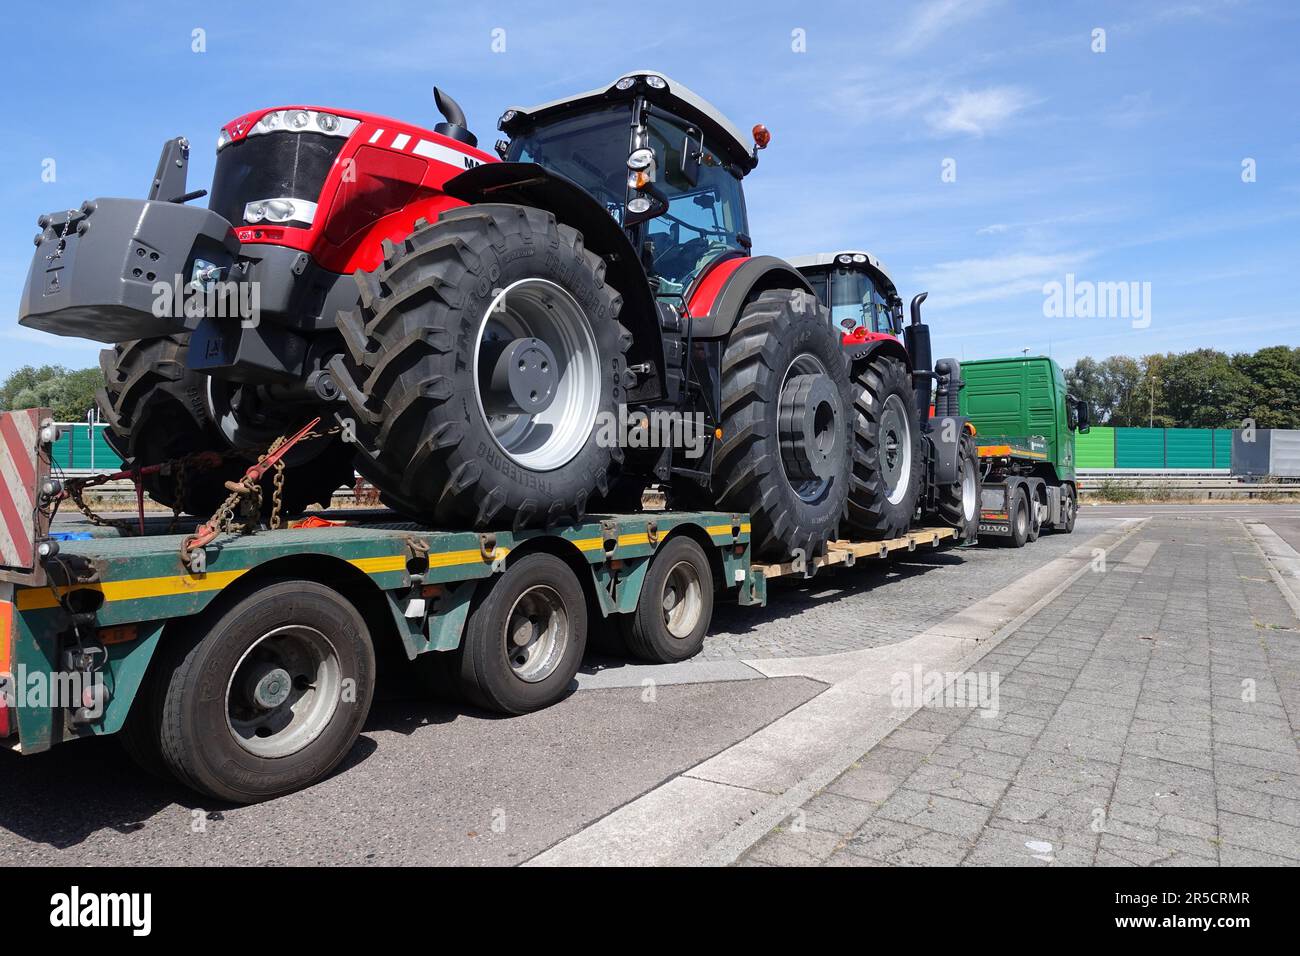 AACHEN, NRW, DEUTSCHLAND - 27. JULI 2018: Schwertransporte von großen Traktoren auf einem speziellen Tieflader-Lkw, Straßenparkplatz auf einer Autobahn. Stockfoto